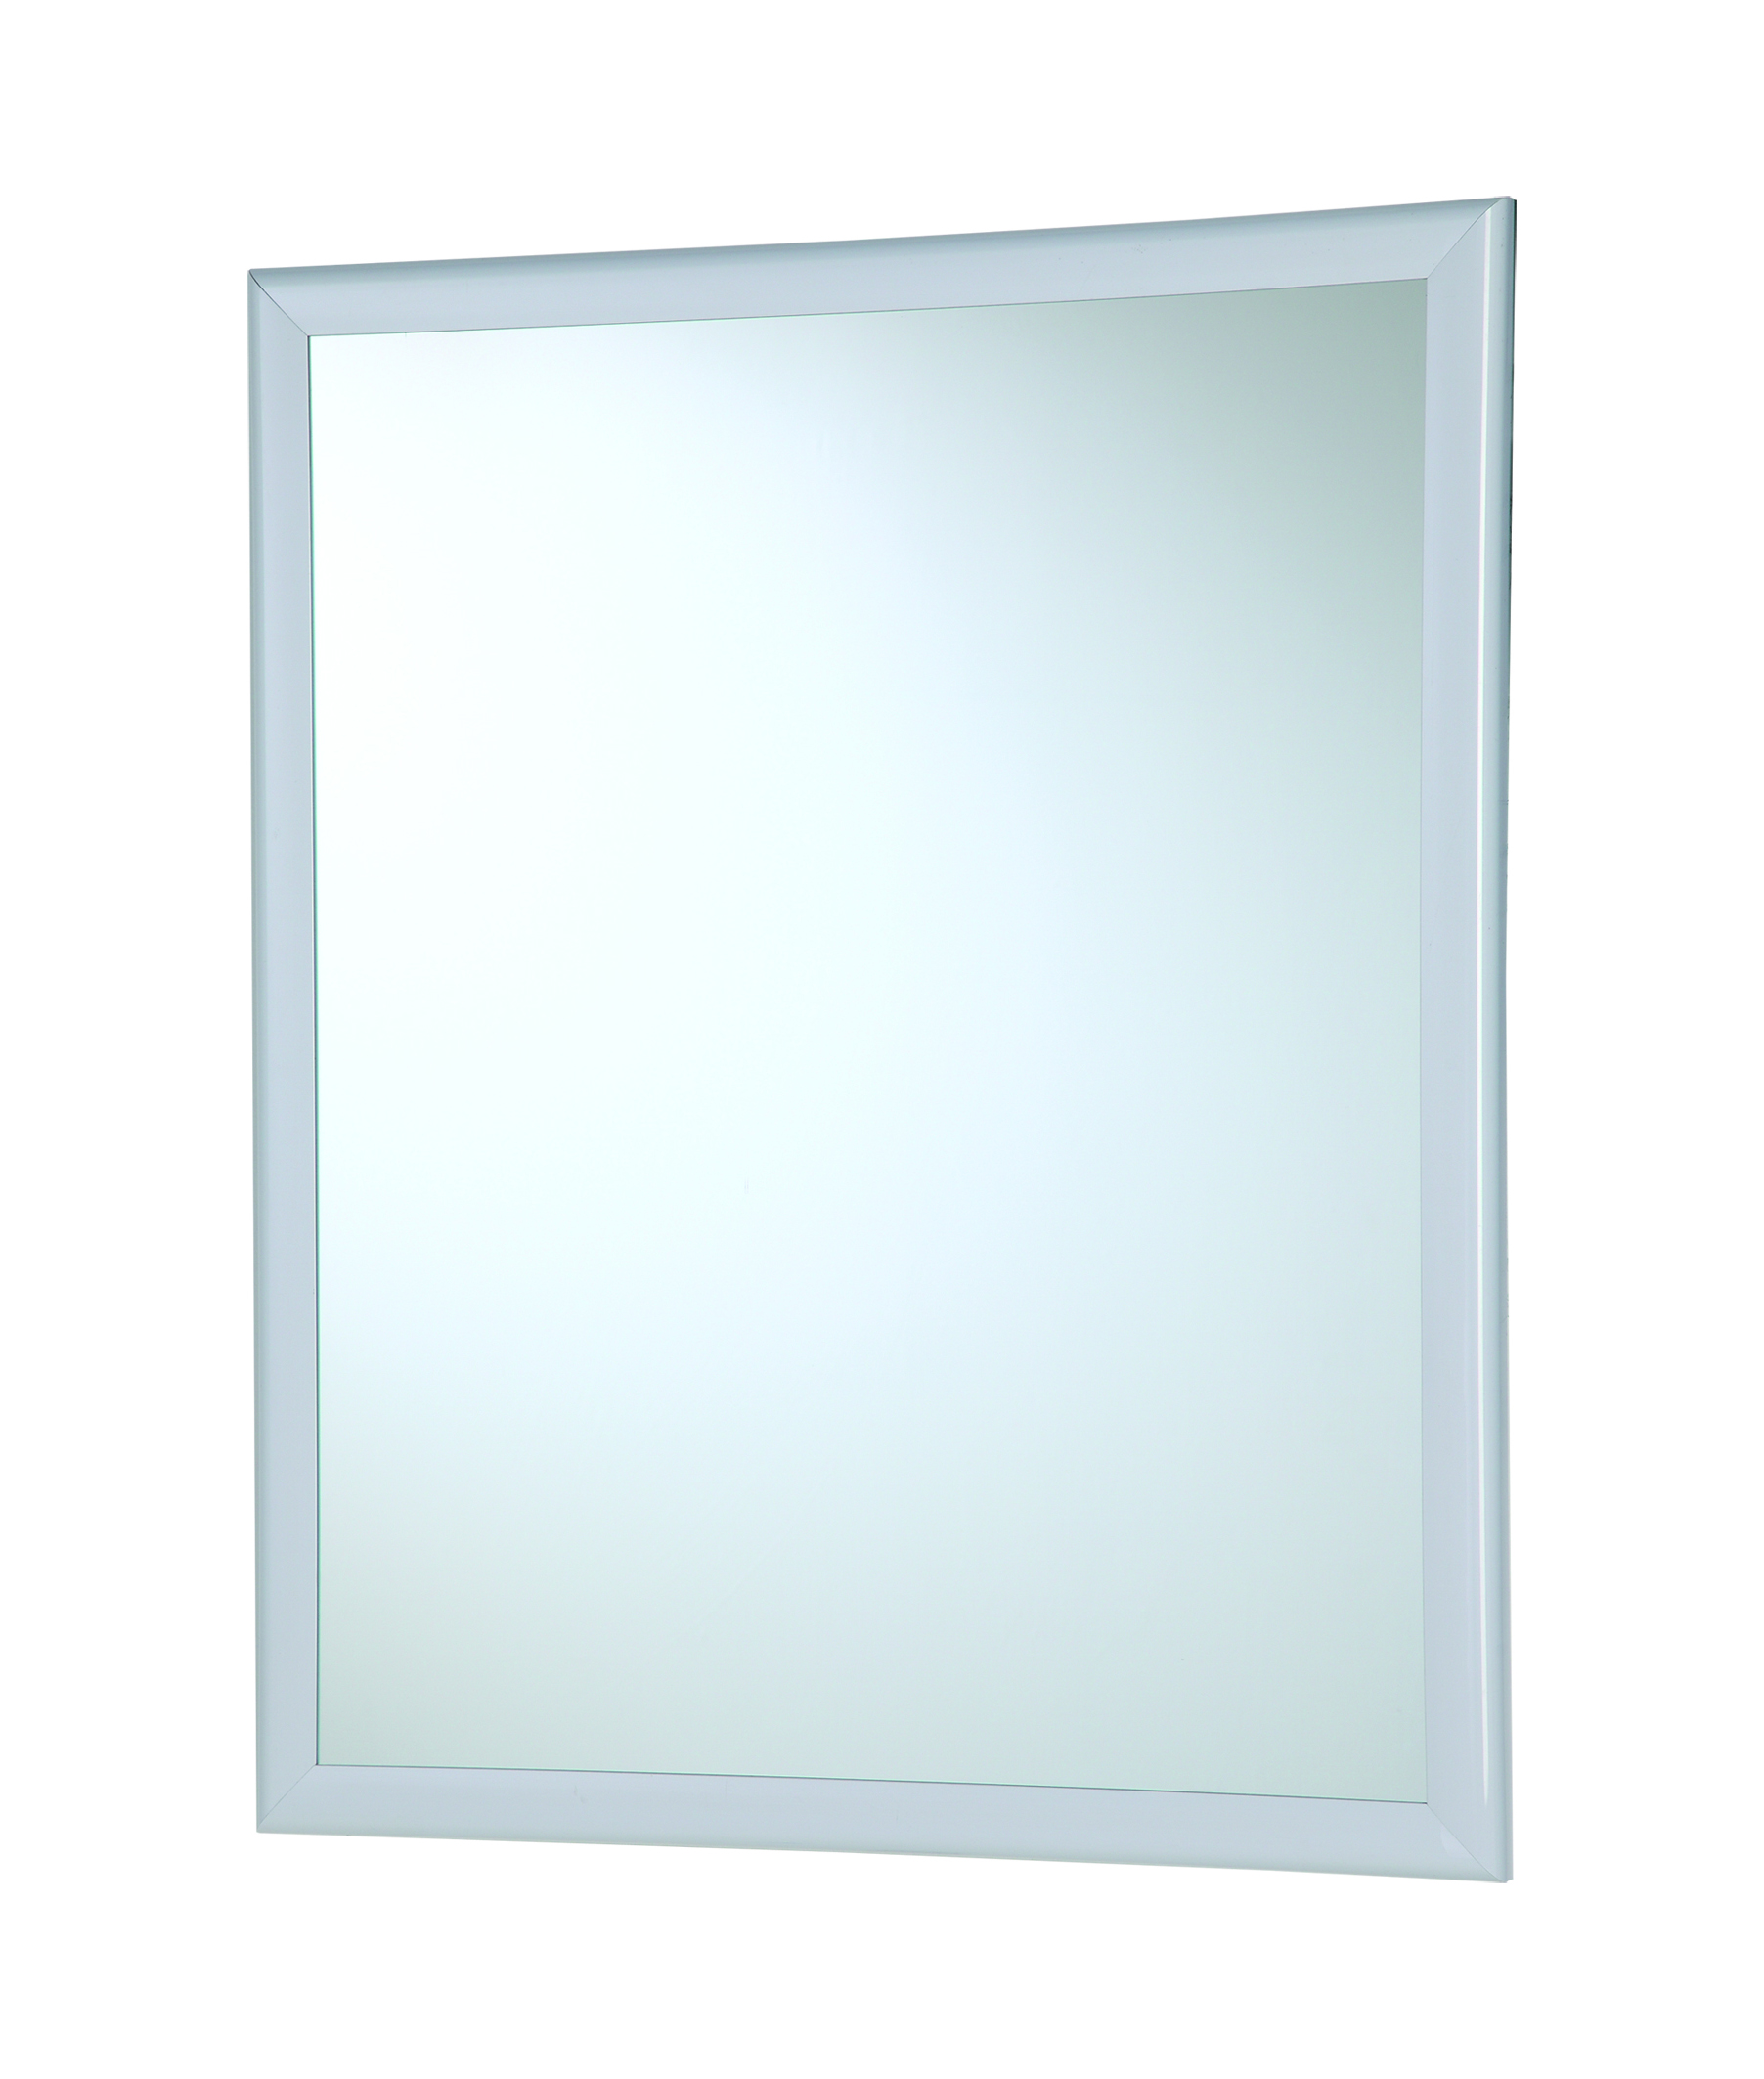 Specchio con cornice in abs 50 x 60 cm bianco